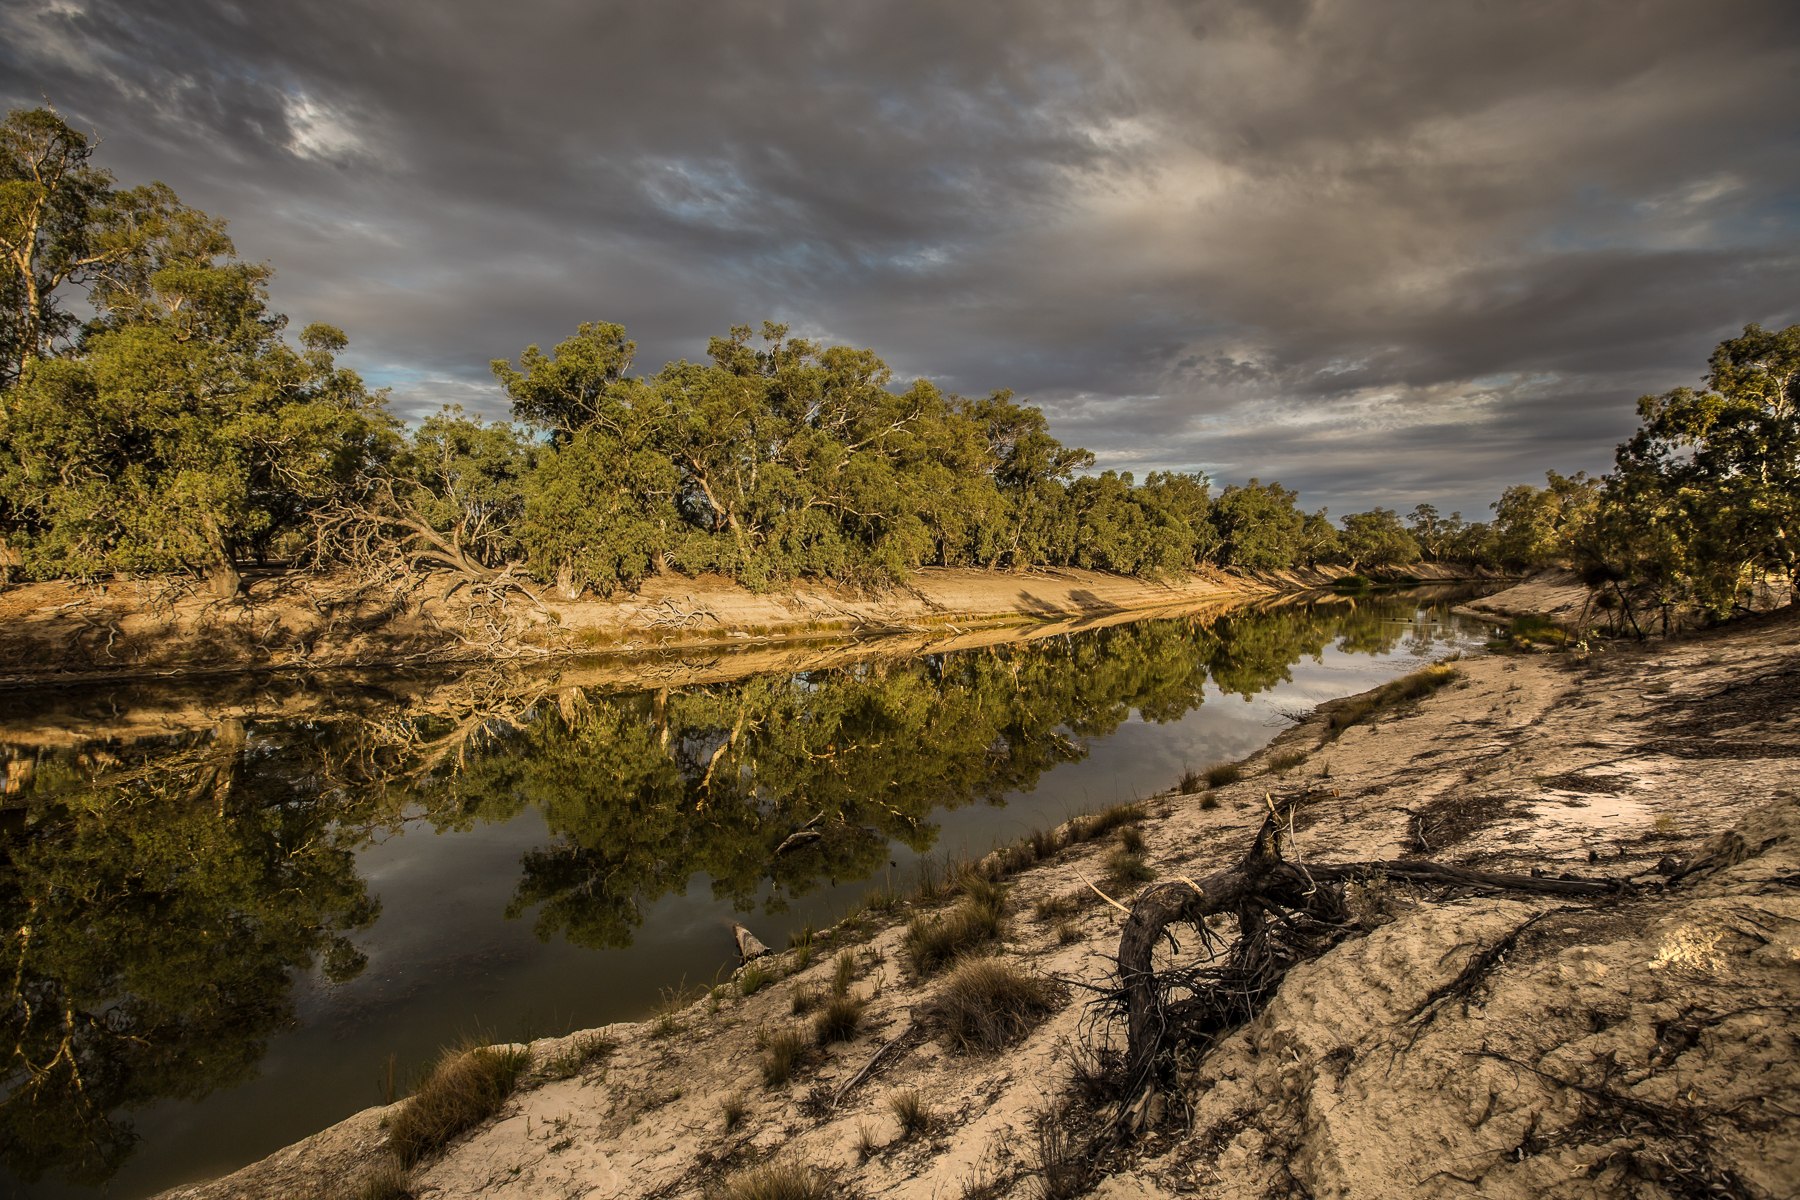 Река дарлинг полноводна. Река Муррей в Австралии. Реки Дарлинг и Муррей. Река Дарлинг в Австралии. Купер крик Австралия.